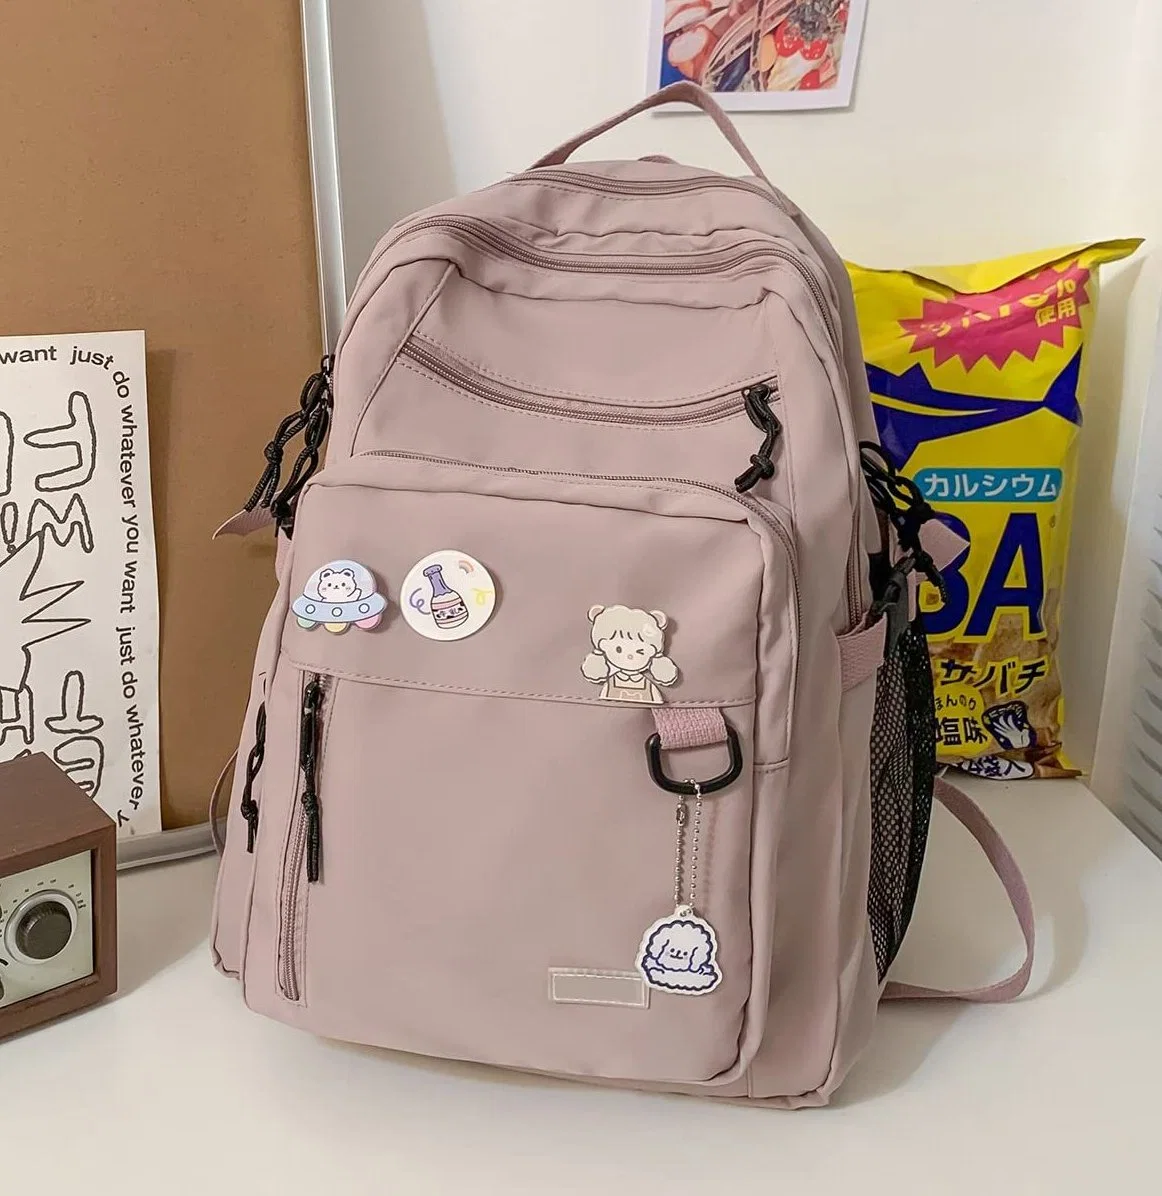 Cute Aesthetic Backpack School Middle Student Backpack Teens Girls Bookbags School Bag